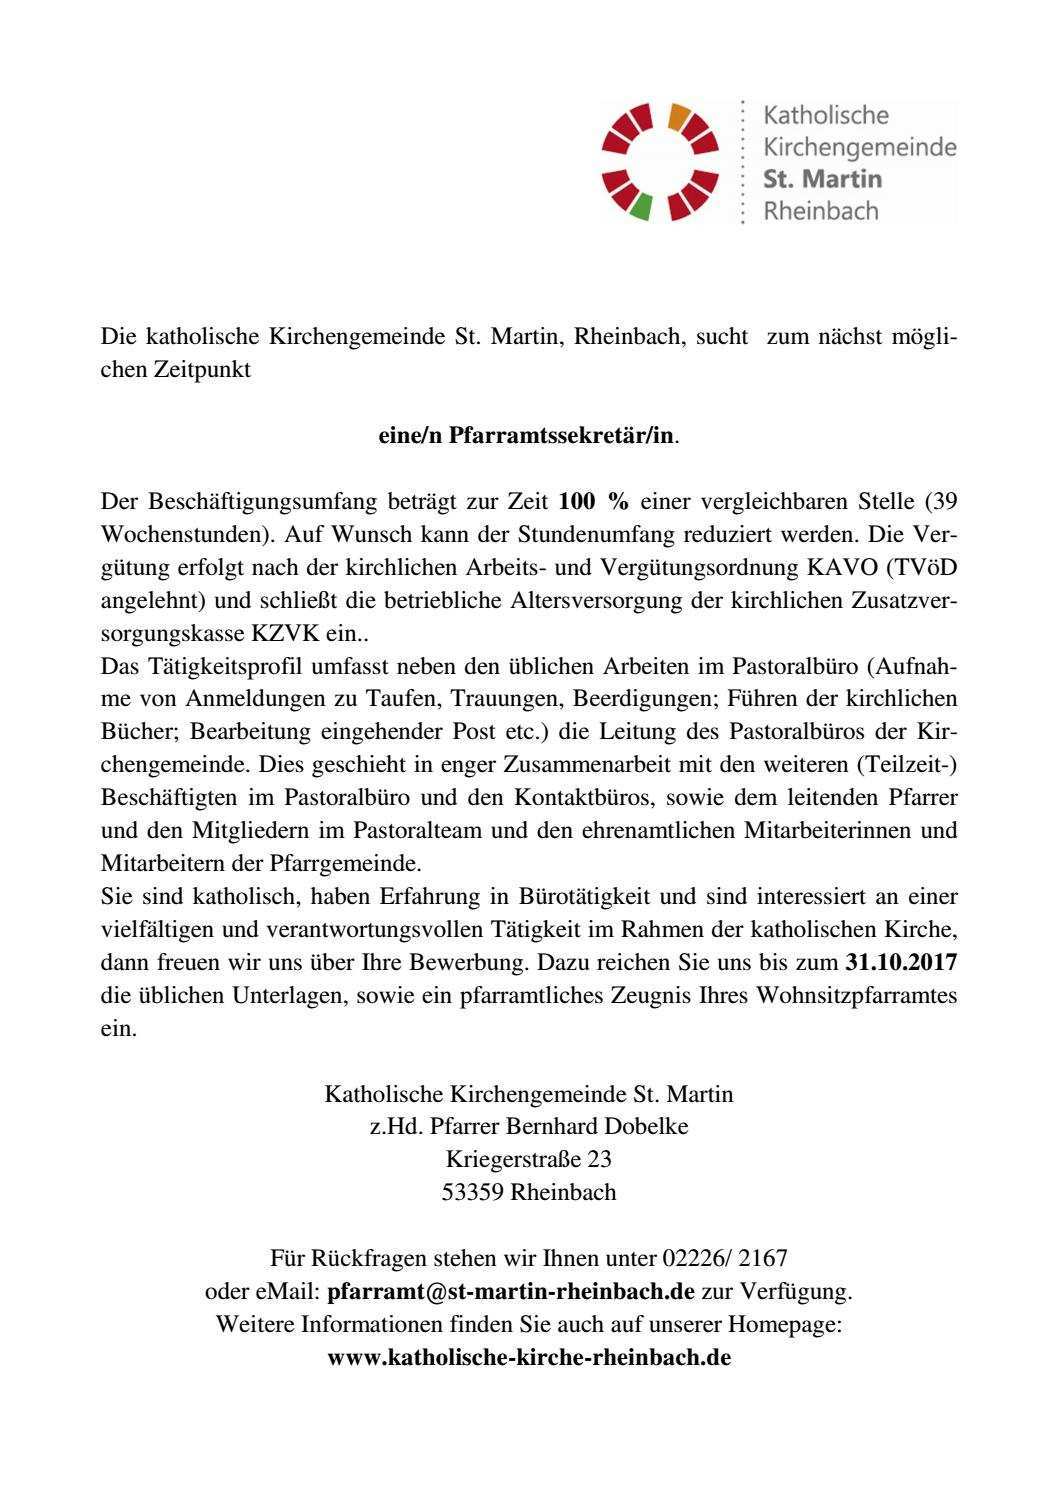 Ausschreibung Sekretariat By Katholische Kirchengemeinde St Martin Rheinbach Issuu